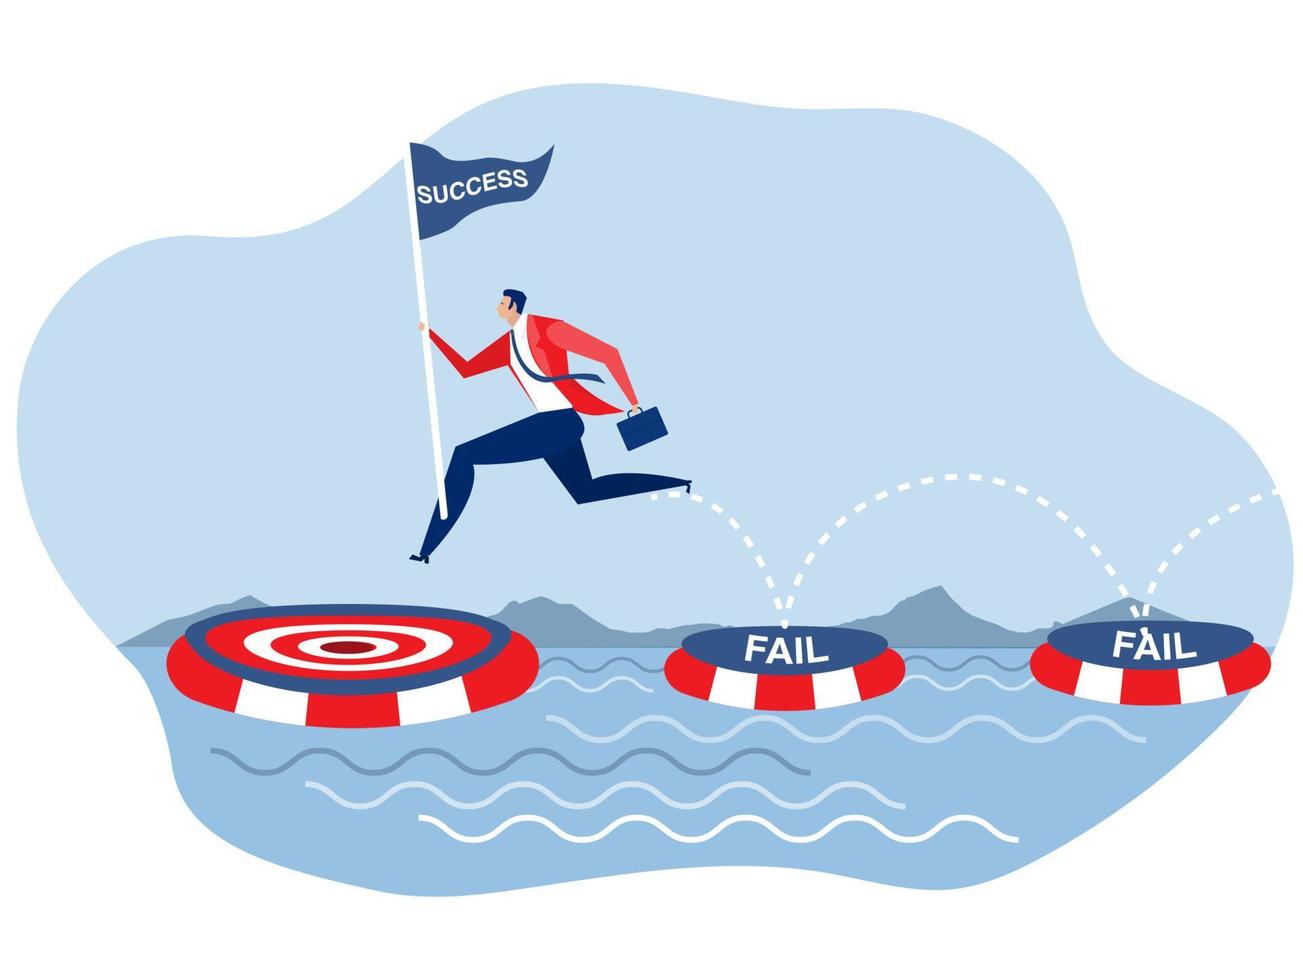 objetivo de éxito, hombre de negocios que sostiene la bandera de éxito saltando en muchas ocasiones de fallas flotando en el agua y finalmente alcanza el concepto de meta de éxito vector ilustrador plano